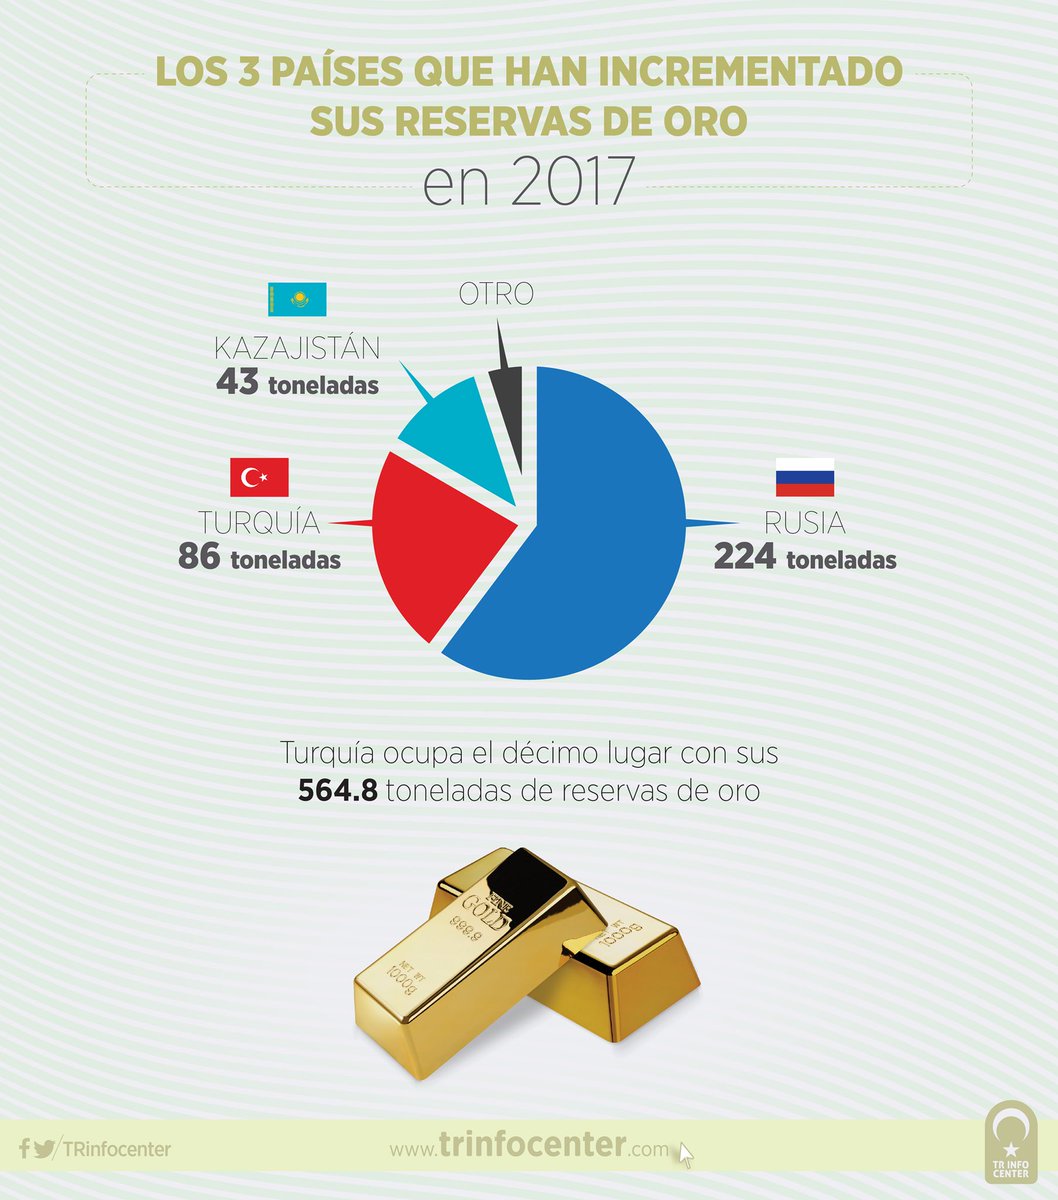 Los 3 países que han incrementado sus reservas de oro en 2017